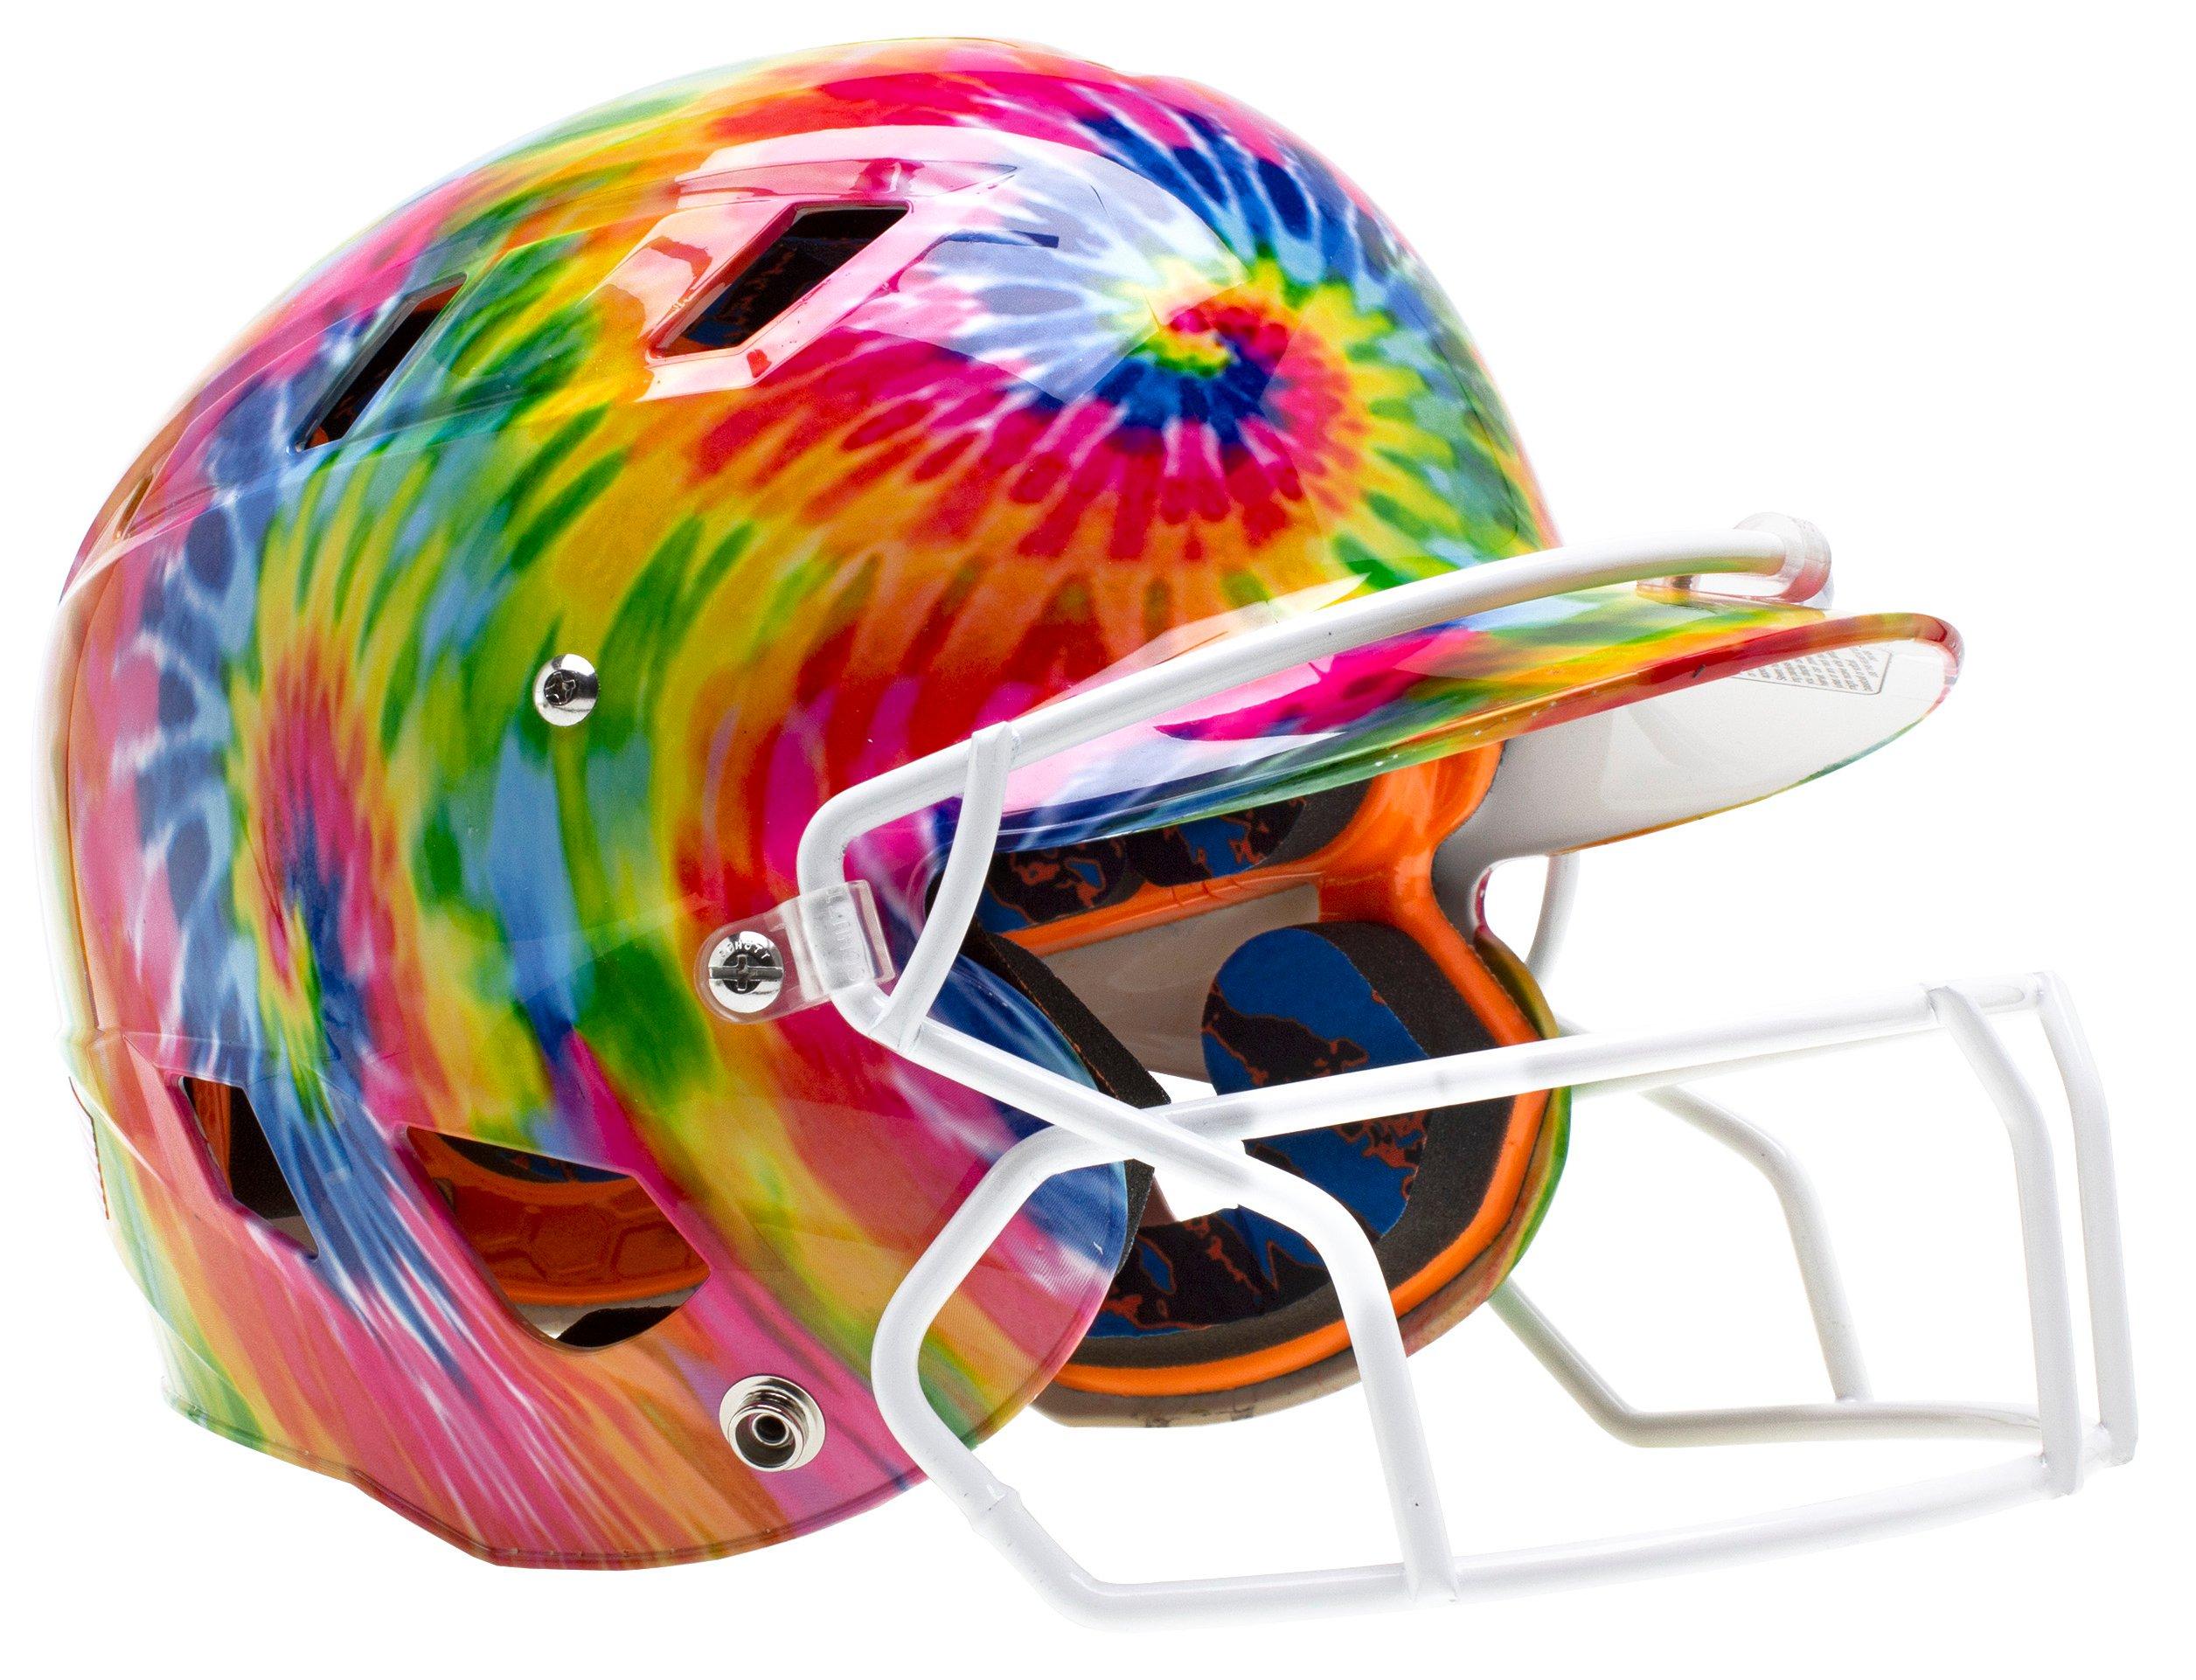 women's softball helmet